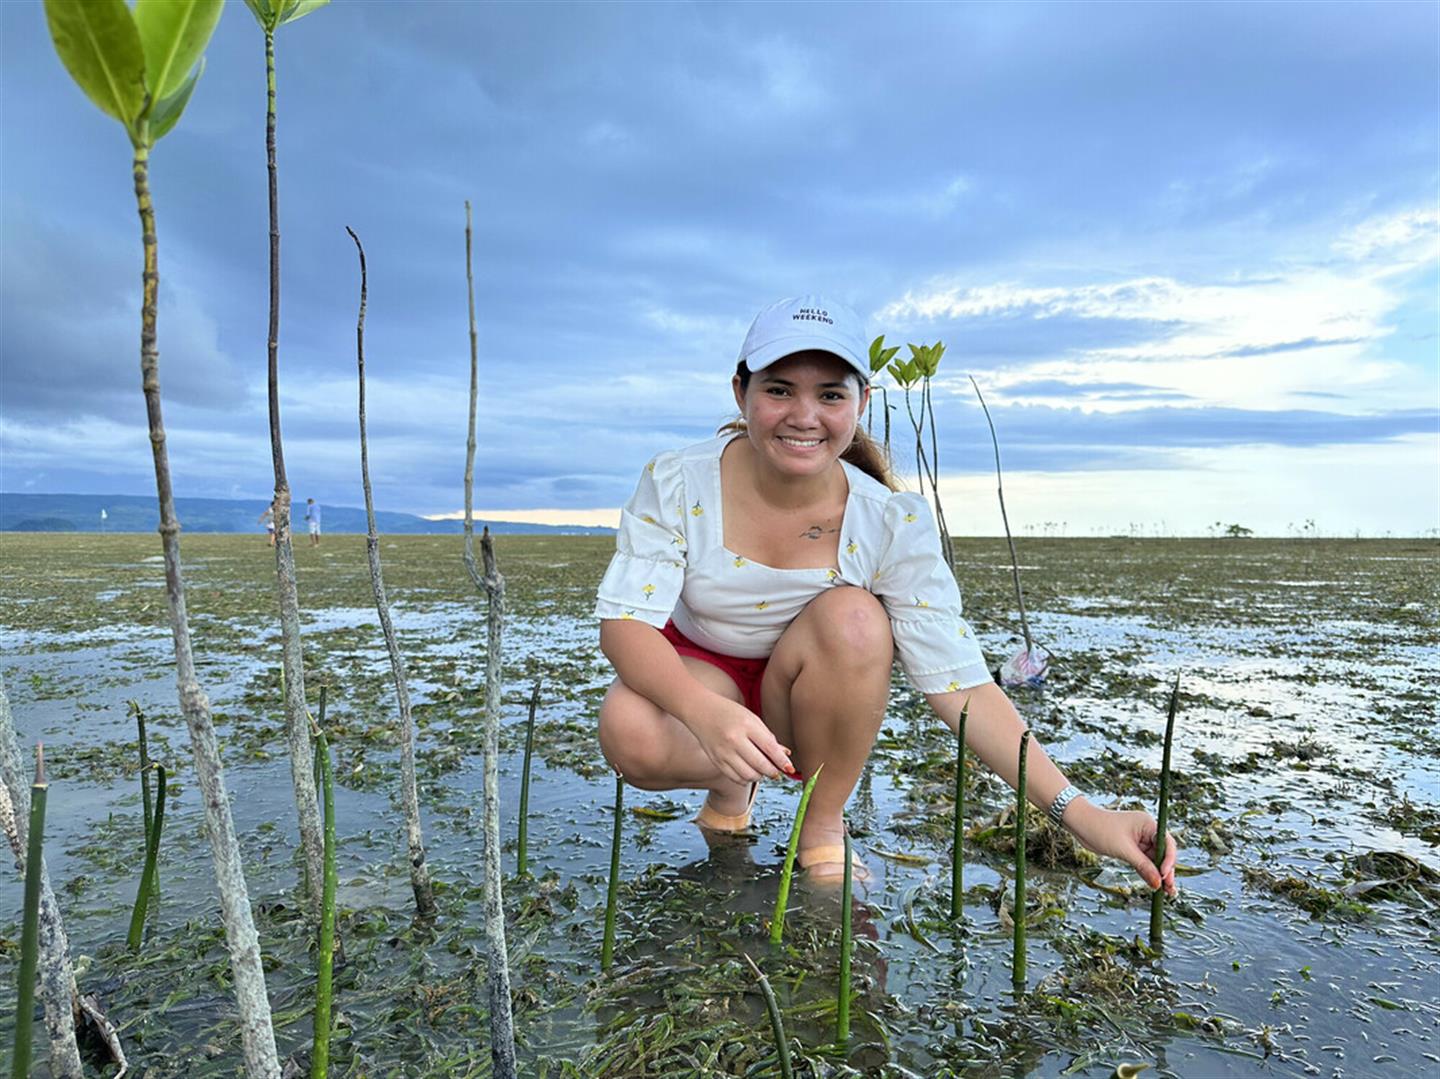 Klimaatactivist Marinel houdt een mangroveboompje vast